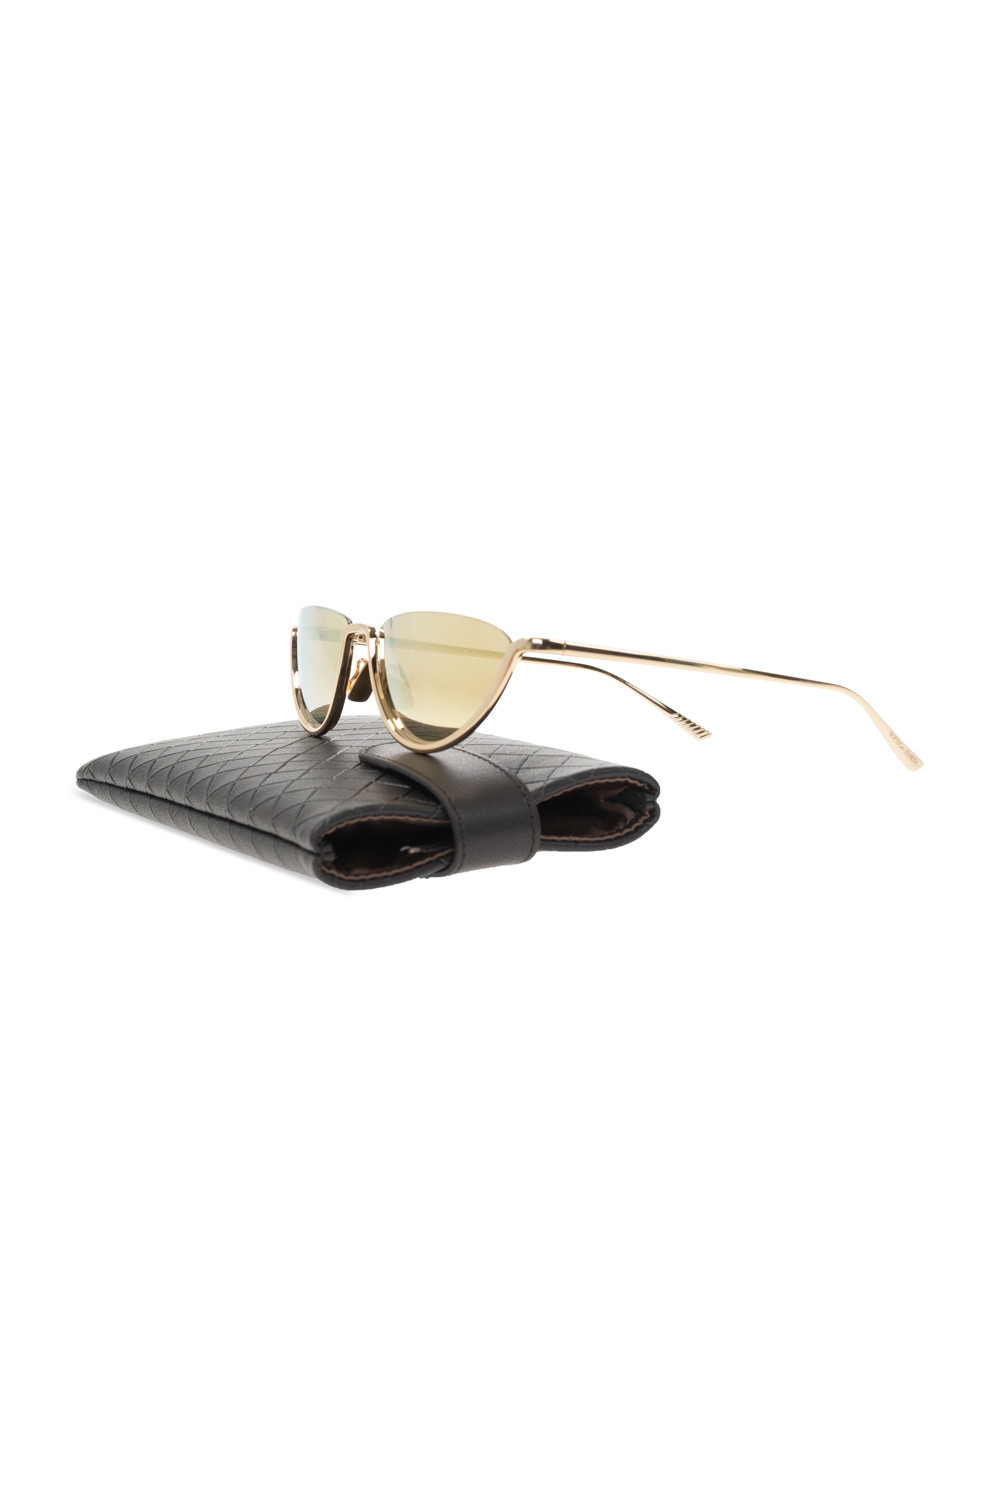 Strike King S11 Optics Clinch Polarized Sunglasses - IetpShops Egypt - Gold  Sunglasses Bottega Veneta